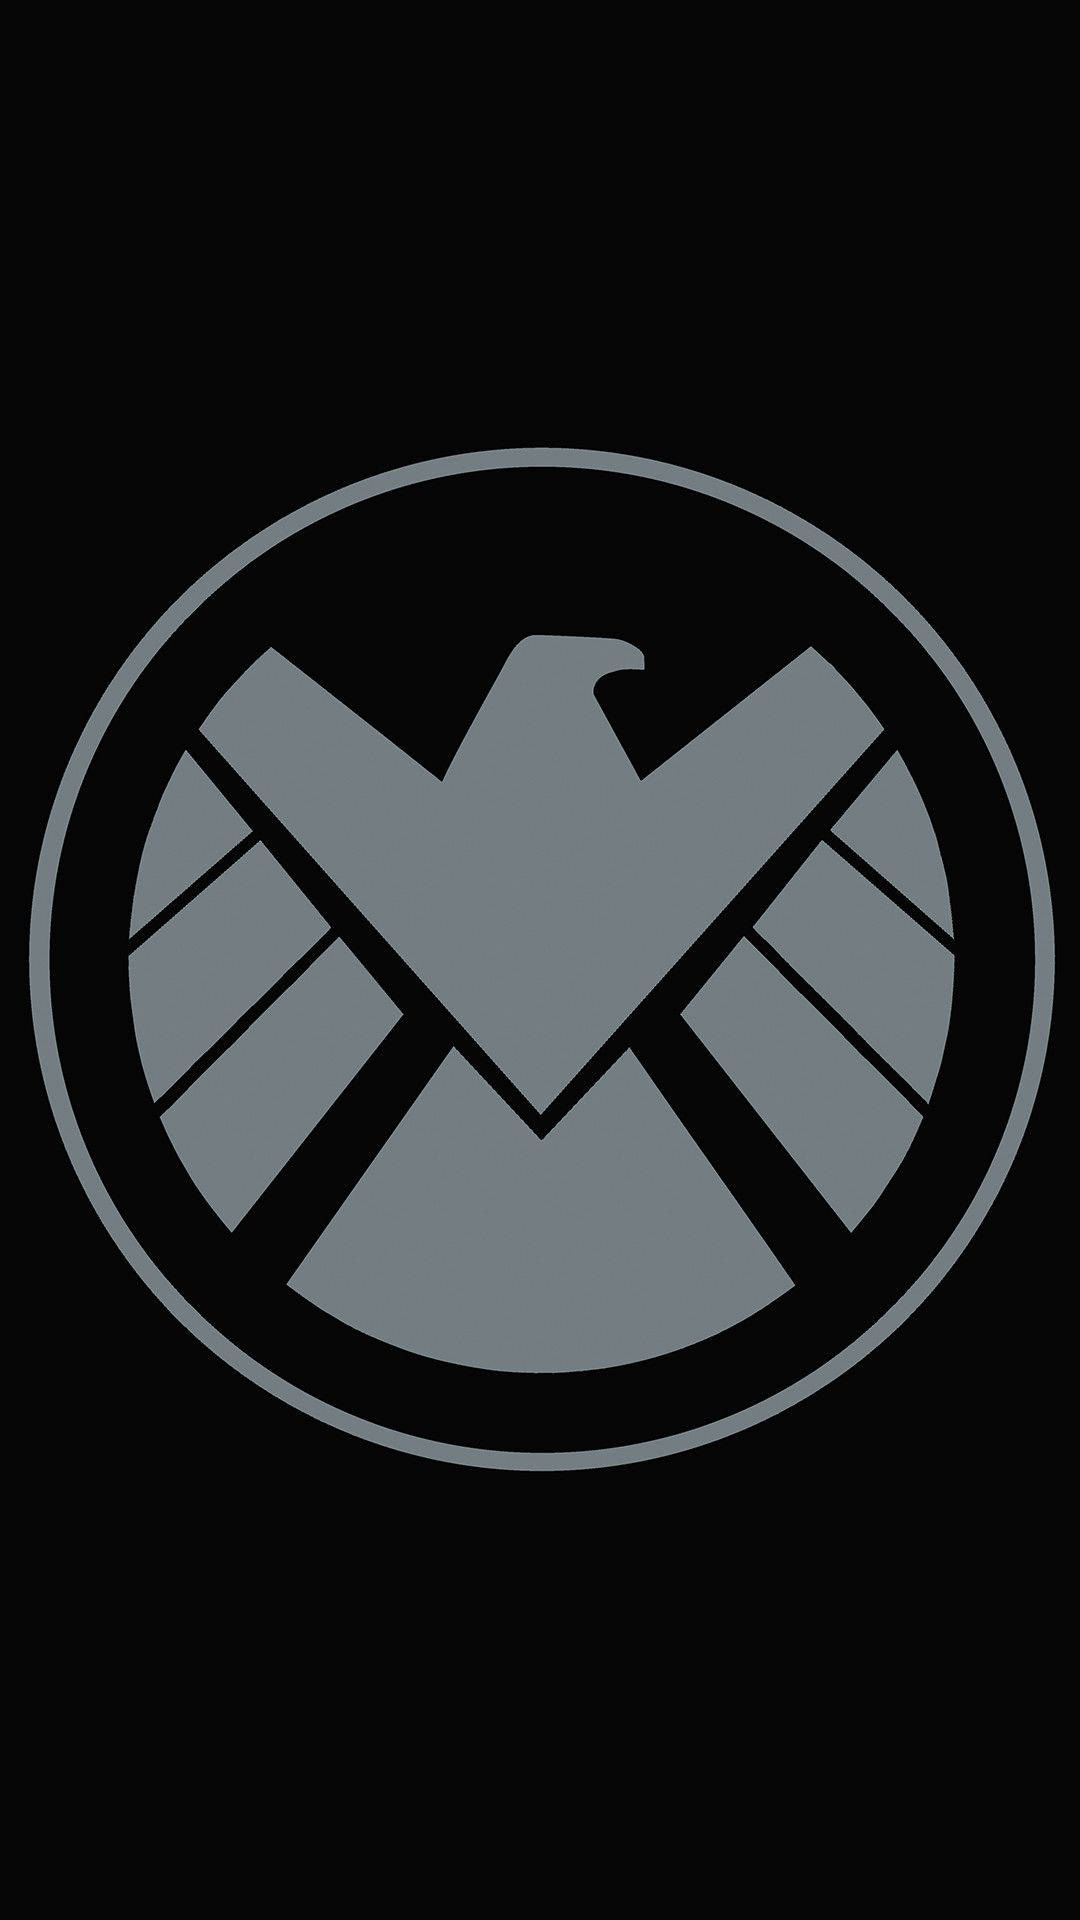 Dieabdeckung Des Avengers-schild-logos Von Marvel Für Das Handy. Wallpaper